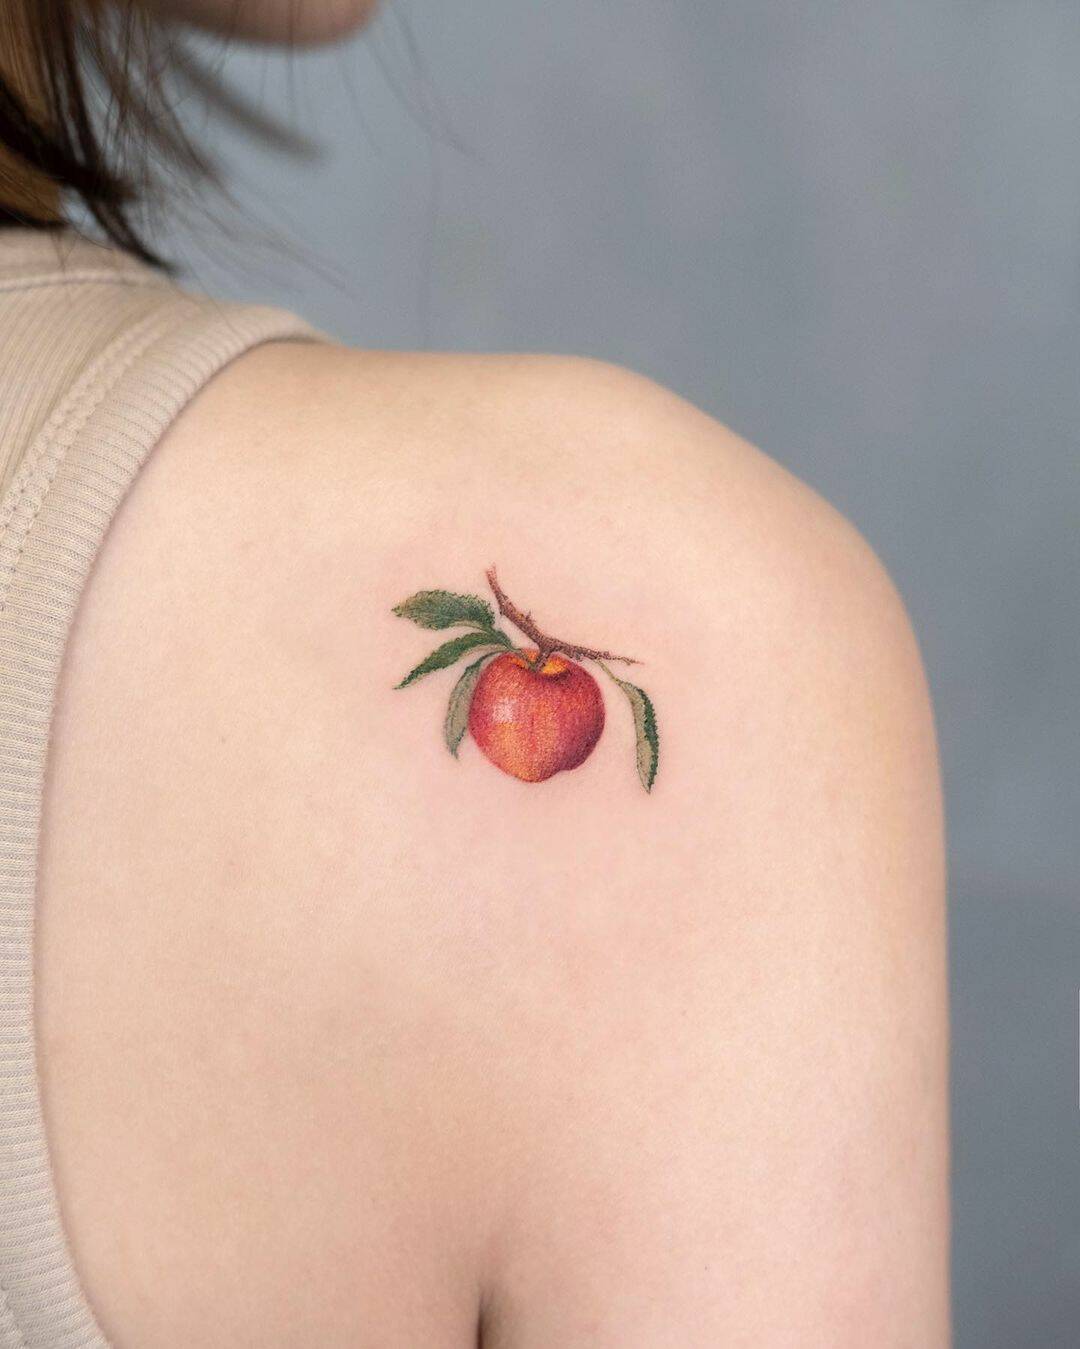 Apple tattoo by newtattoo studio